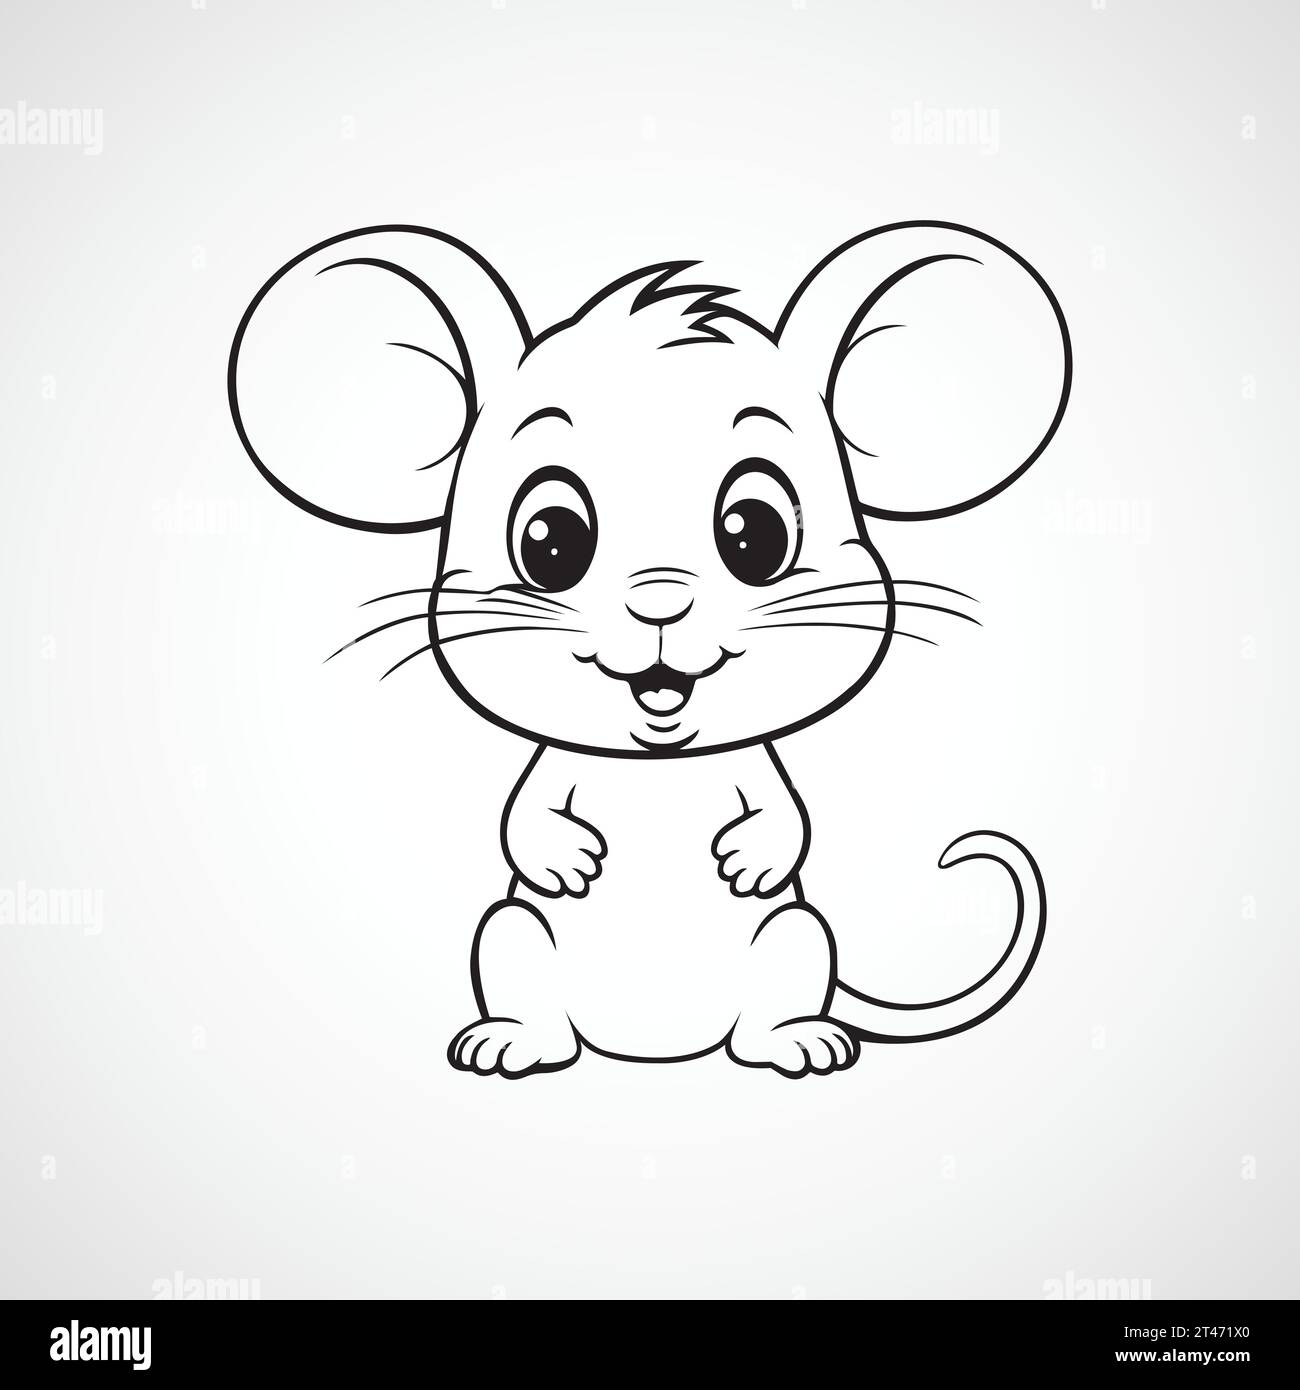 vector rat cartoon illustration Stock Vector